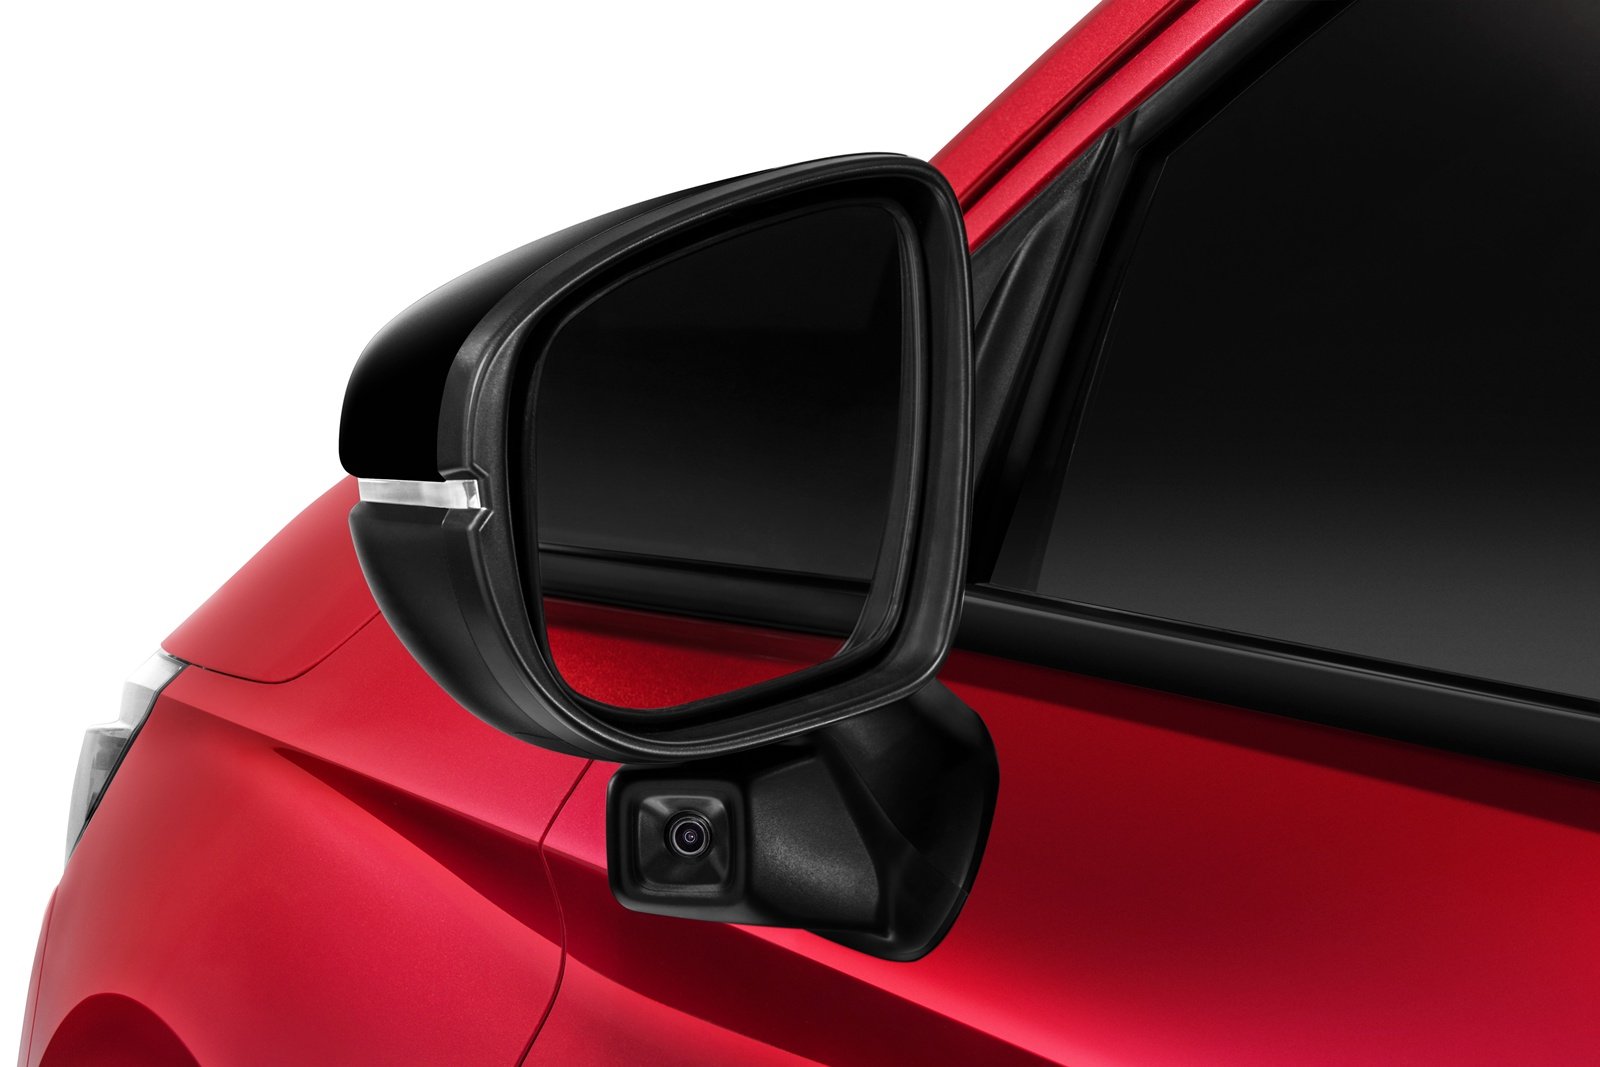 City Hatchback的RS e:HEV和V版本中搭配了Honda LaneWatch，可从摄像监控从左侧驶来的车辆，并使用信息娱乐系统中的实时视觉来减少盲点。